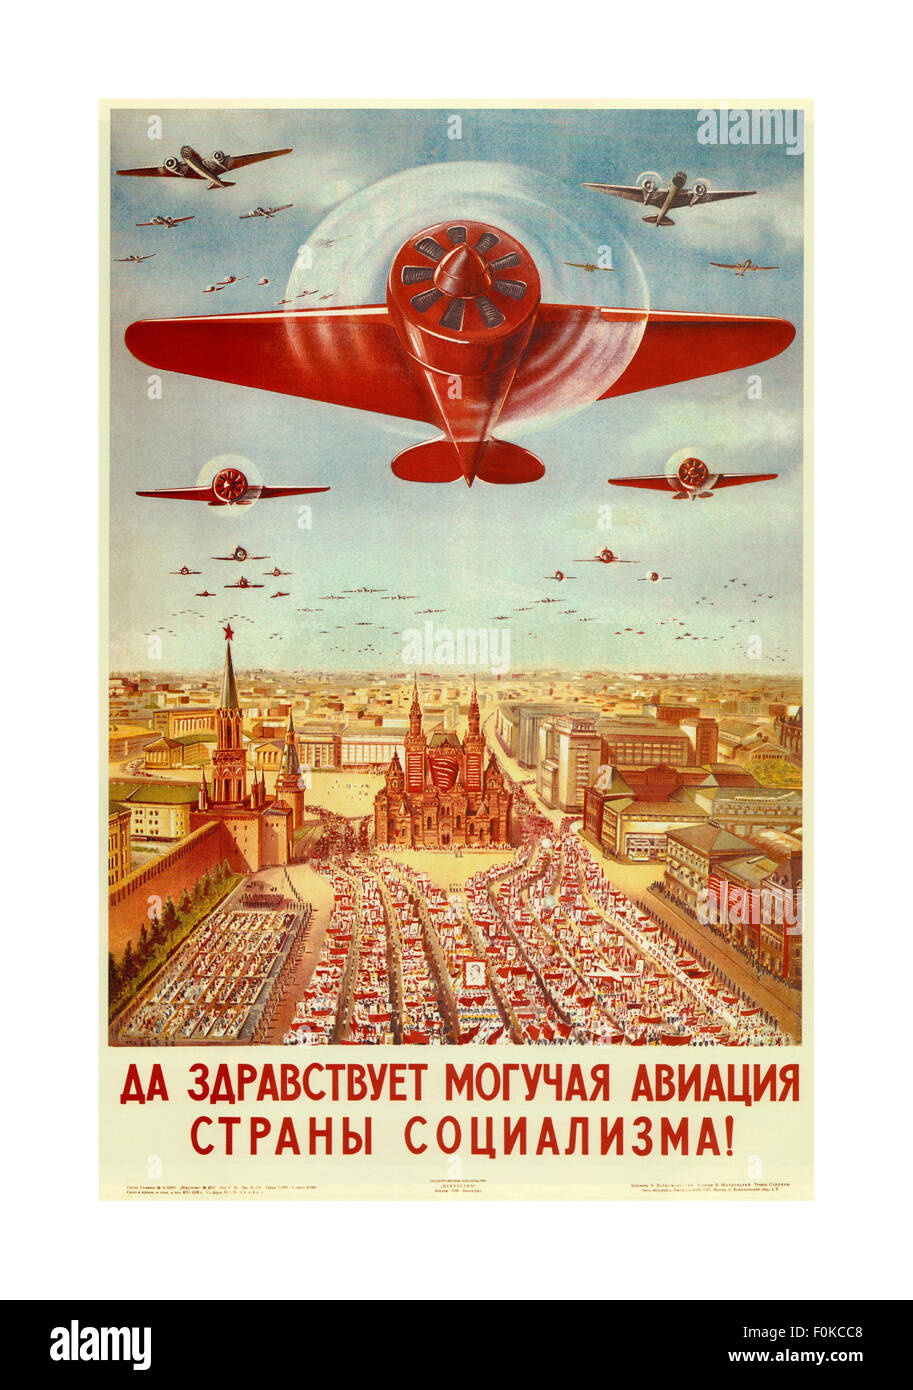 V. Dobrovolsky (1939), "Viva la potente forza aerea della terra del socialismo!" russo propaganda vintage parade poster Foto Stock